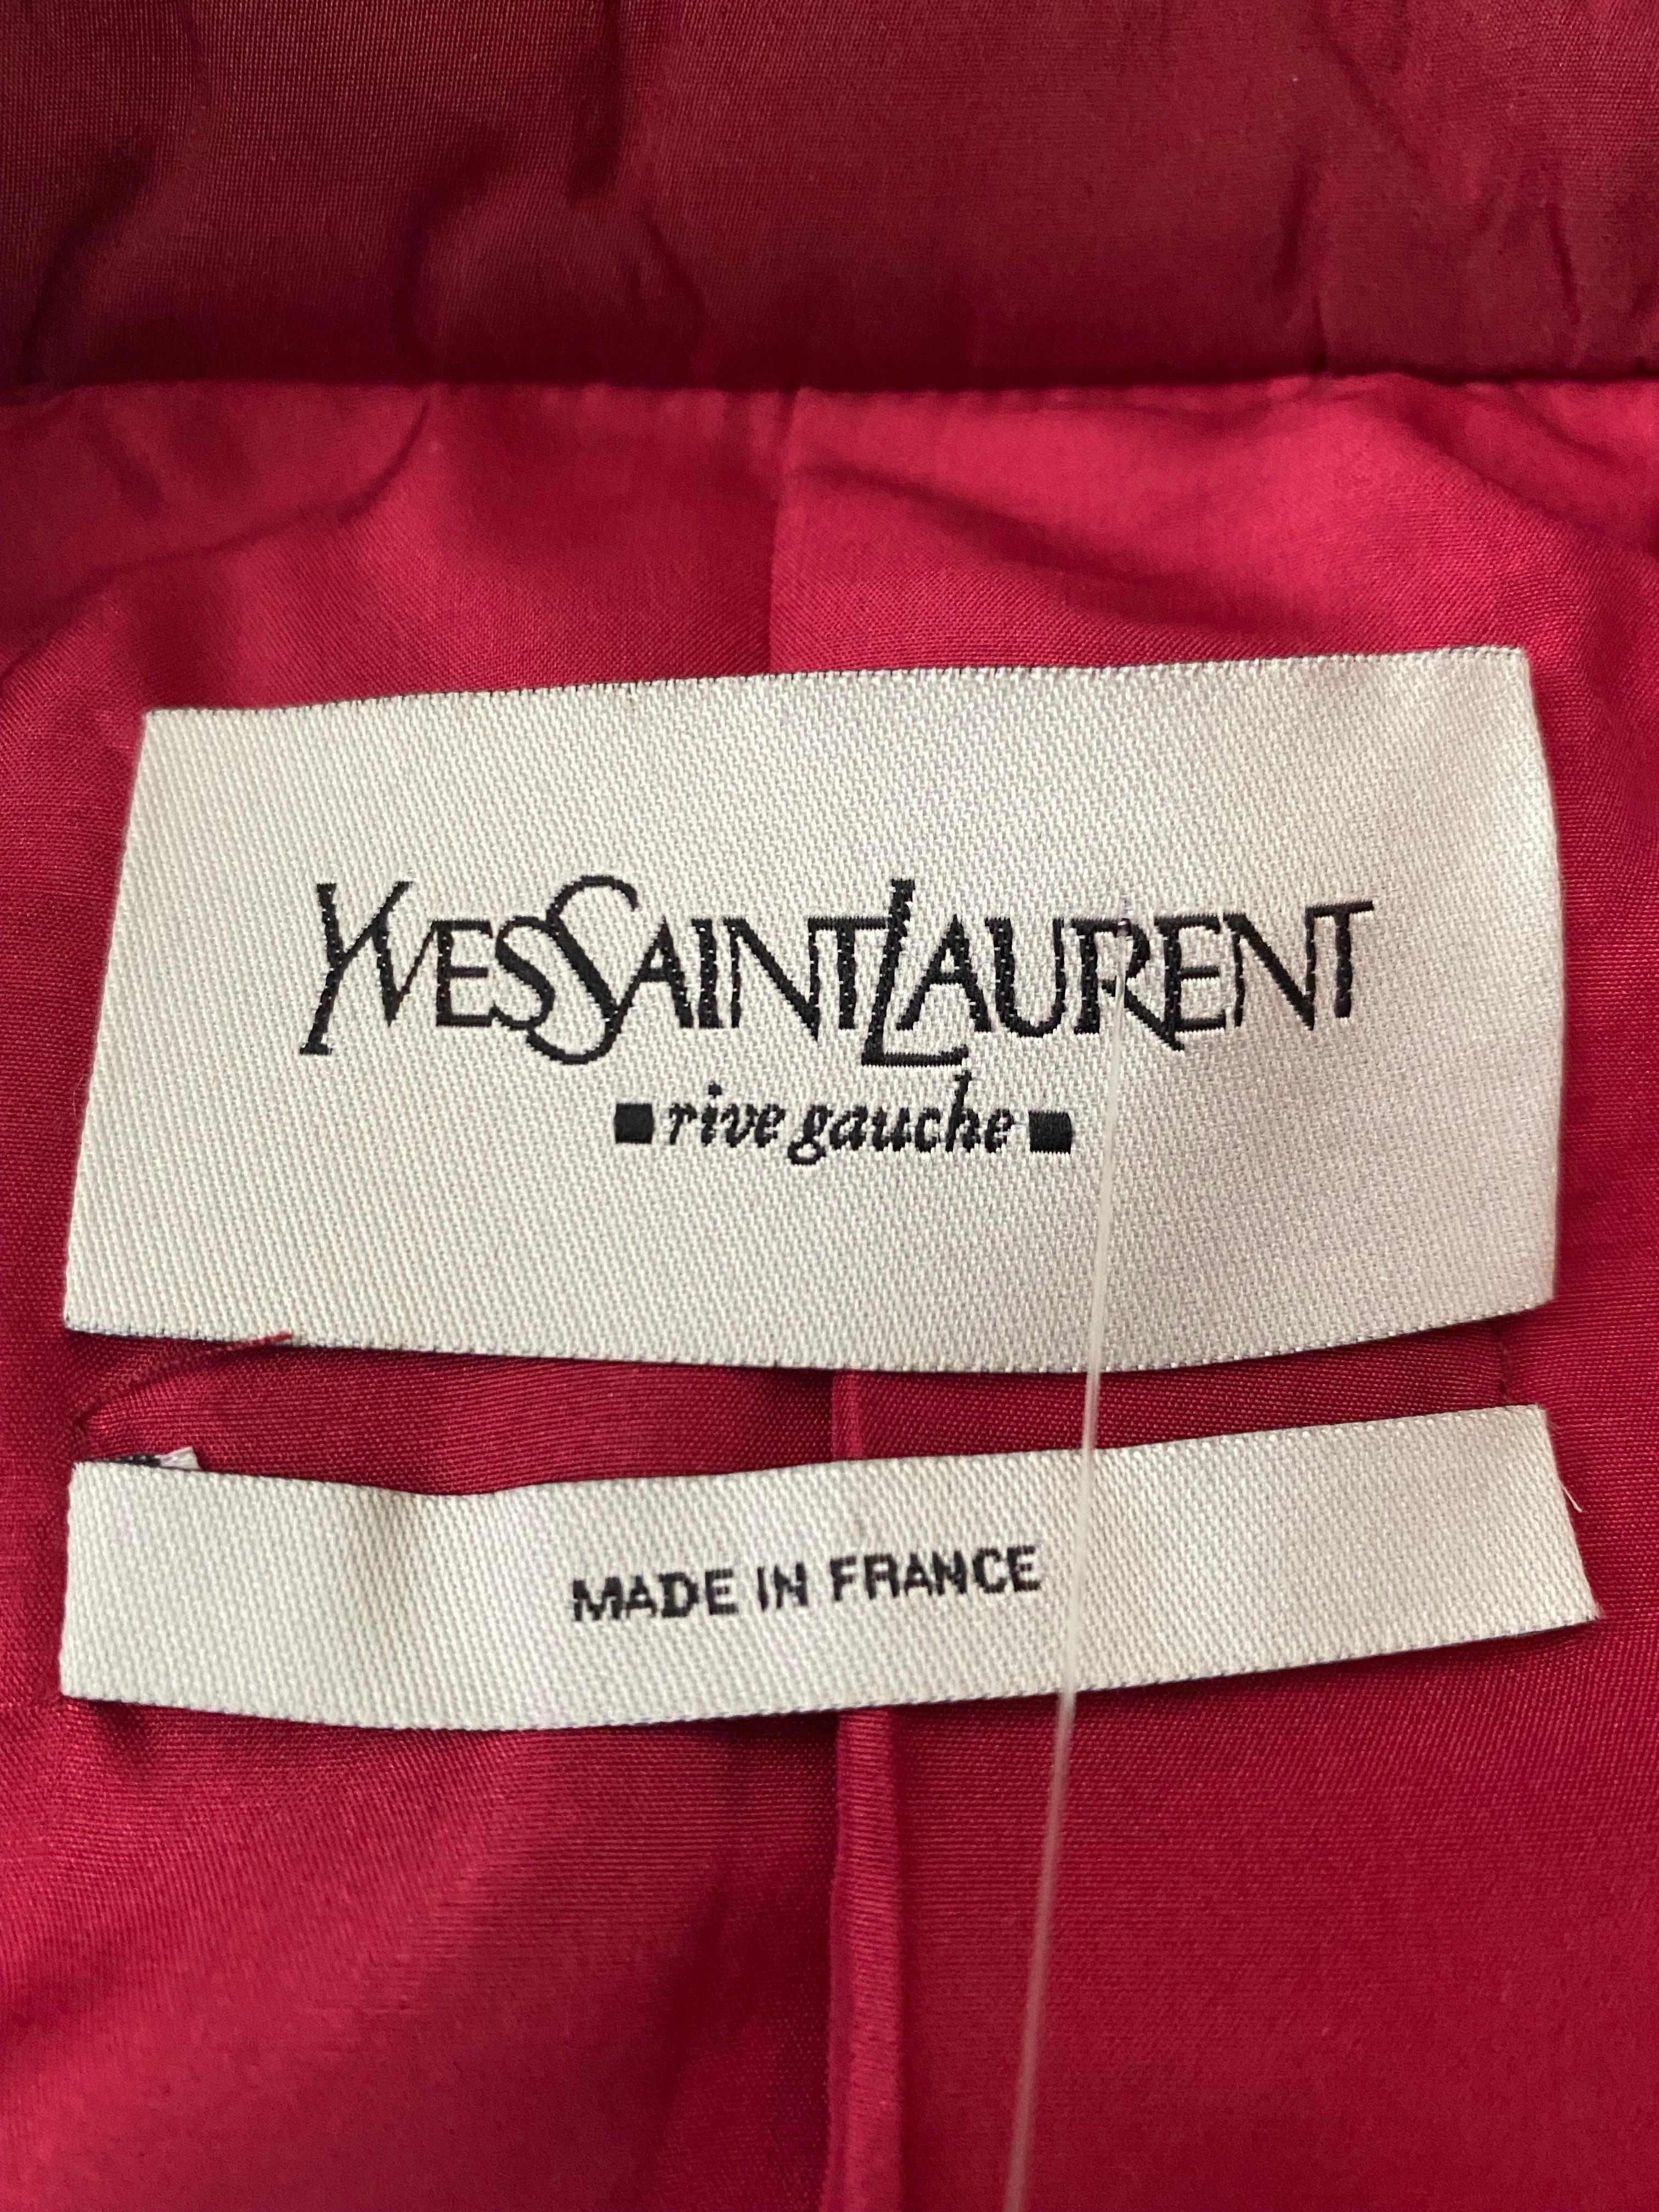 Tailleur jupe en soie vintage Tom Ford pour Yves Saint Laurent, A/H 2004 Look n°1, taille 38/6 Excellent état - En vente à Montgomery, TX